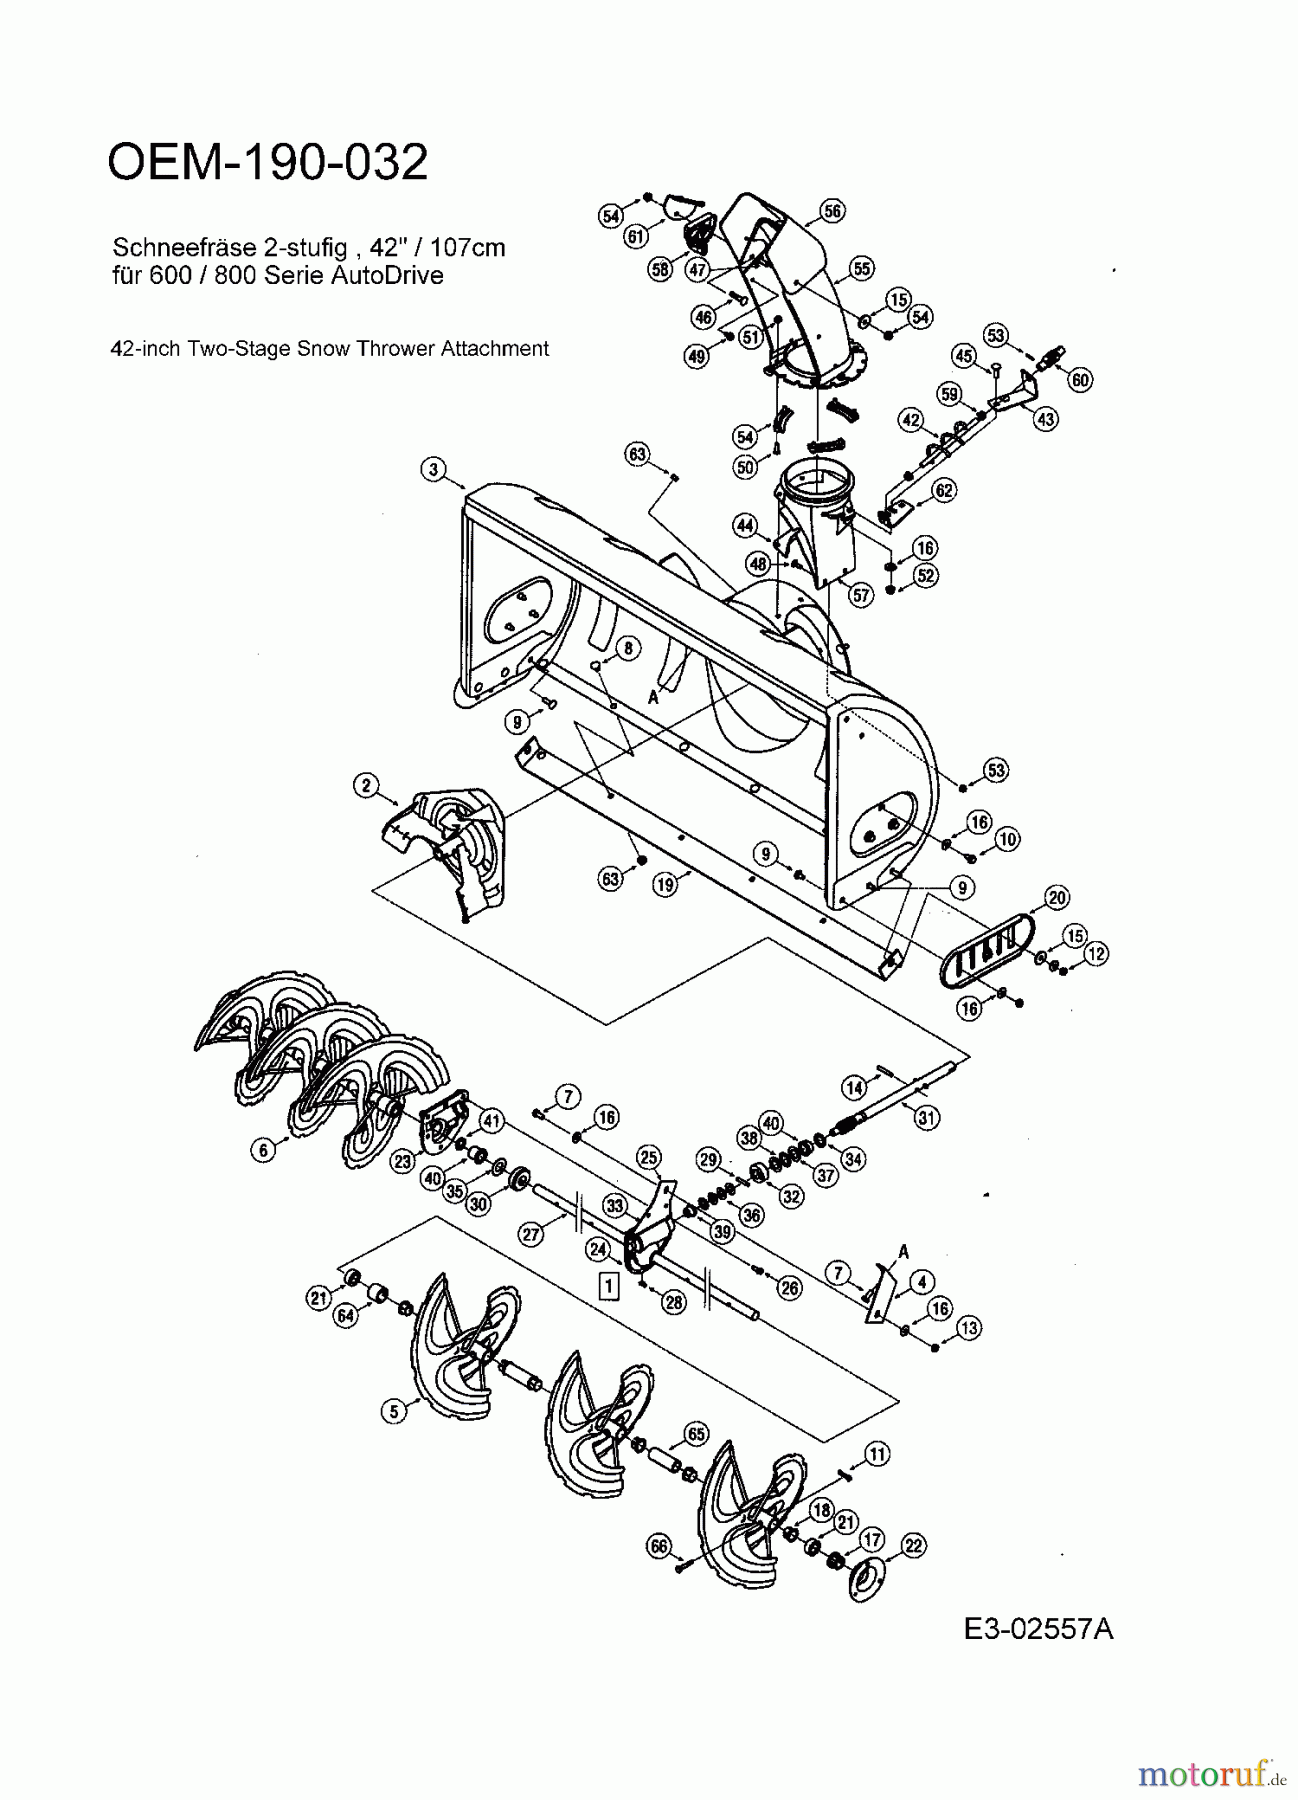  MTD Zubehör Zubehör Garten- und Rasentraktoren Schneefräsen für 800 Serie (RT-99) OEM-190-032  (2006) Fräsgehäuse, Schnecke, Schneckengetriebe